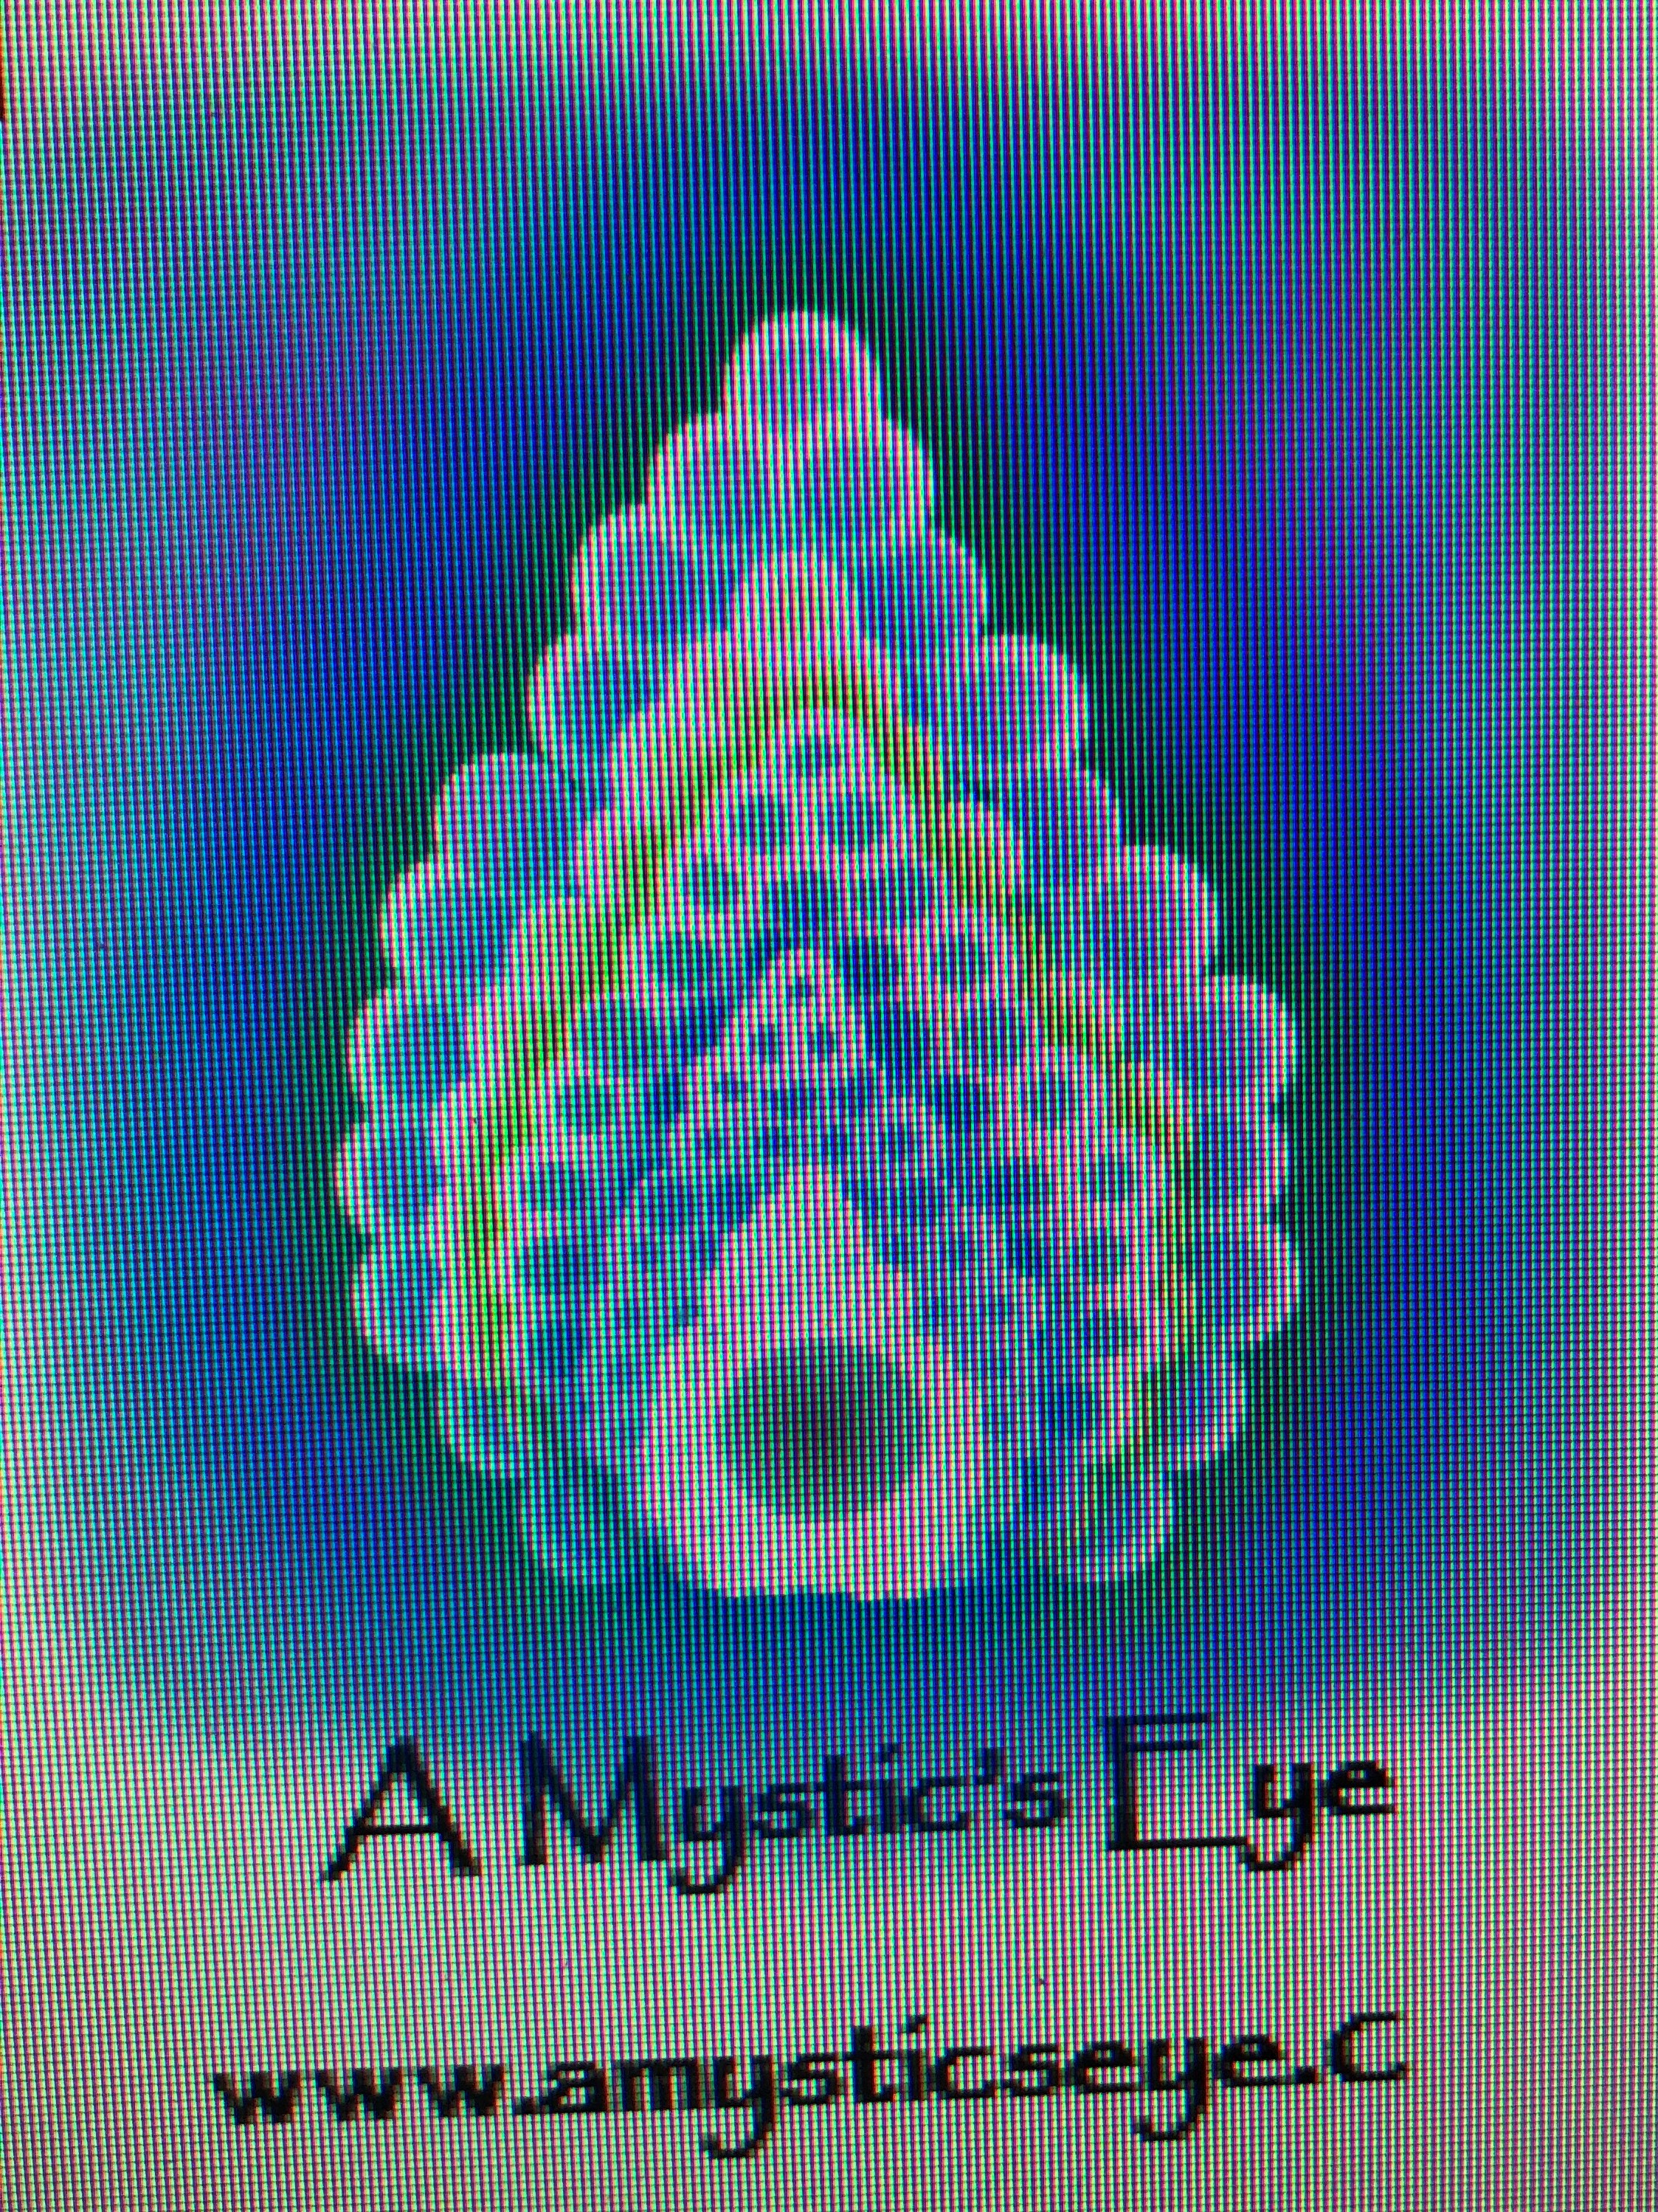 A Mystic's Eye